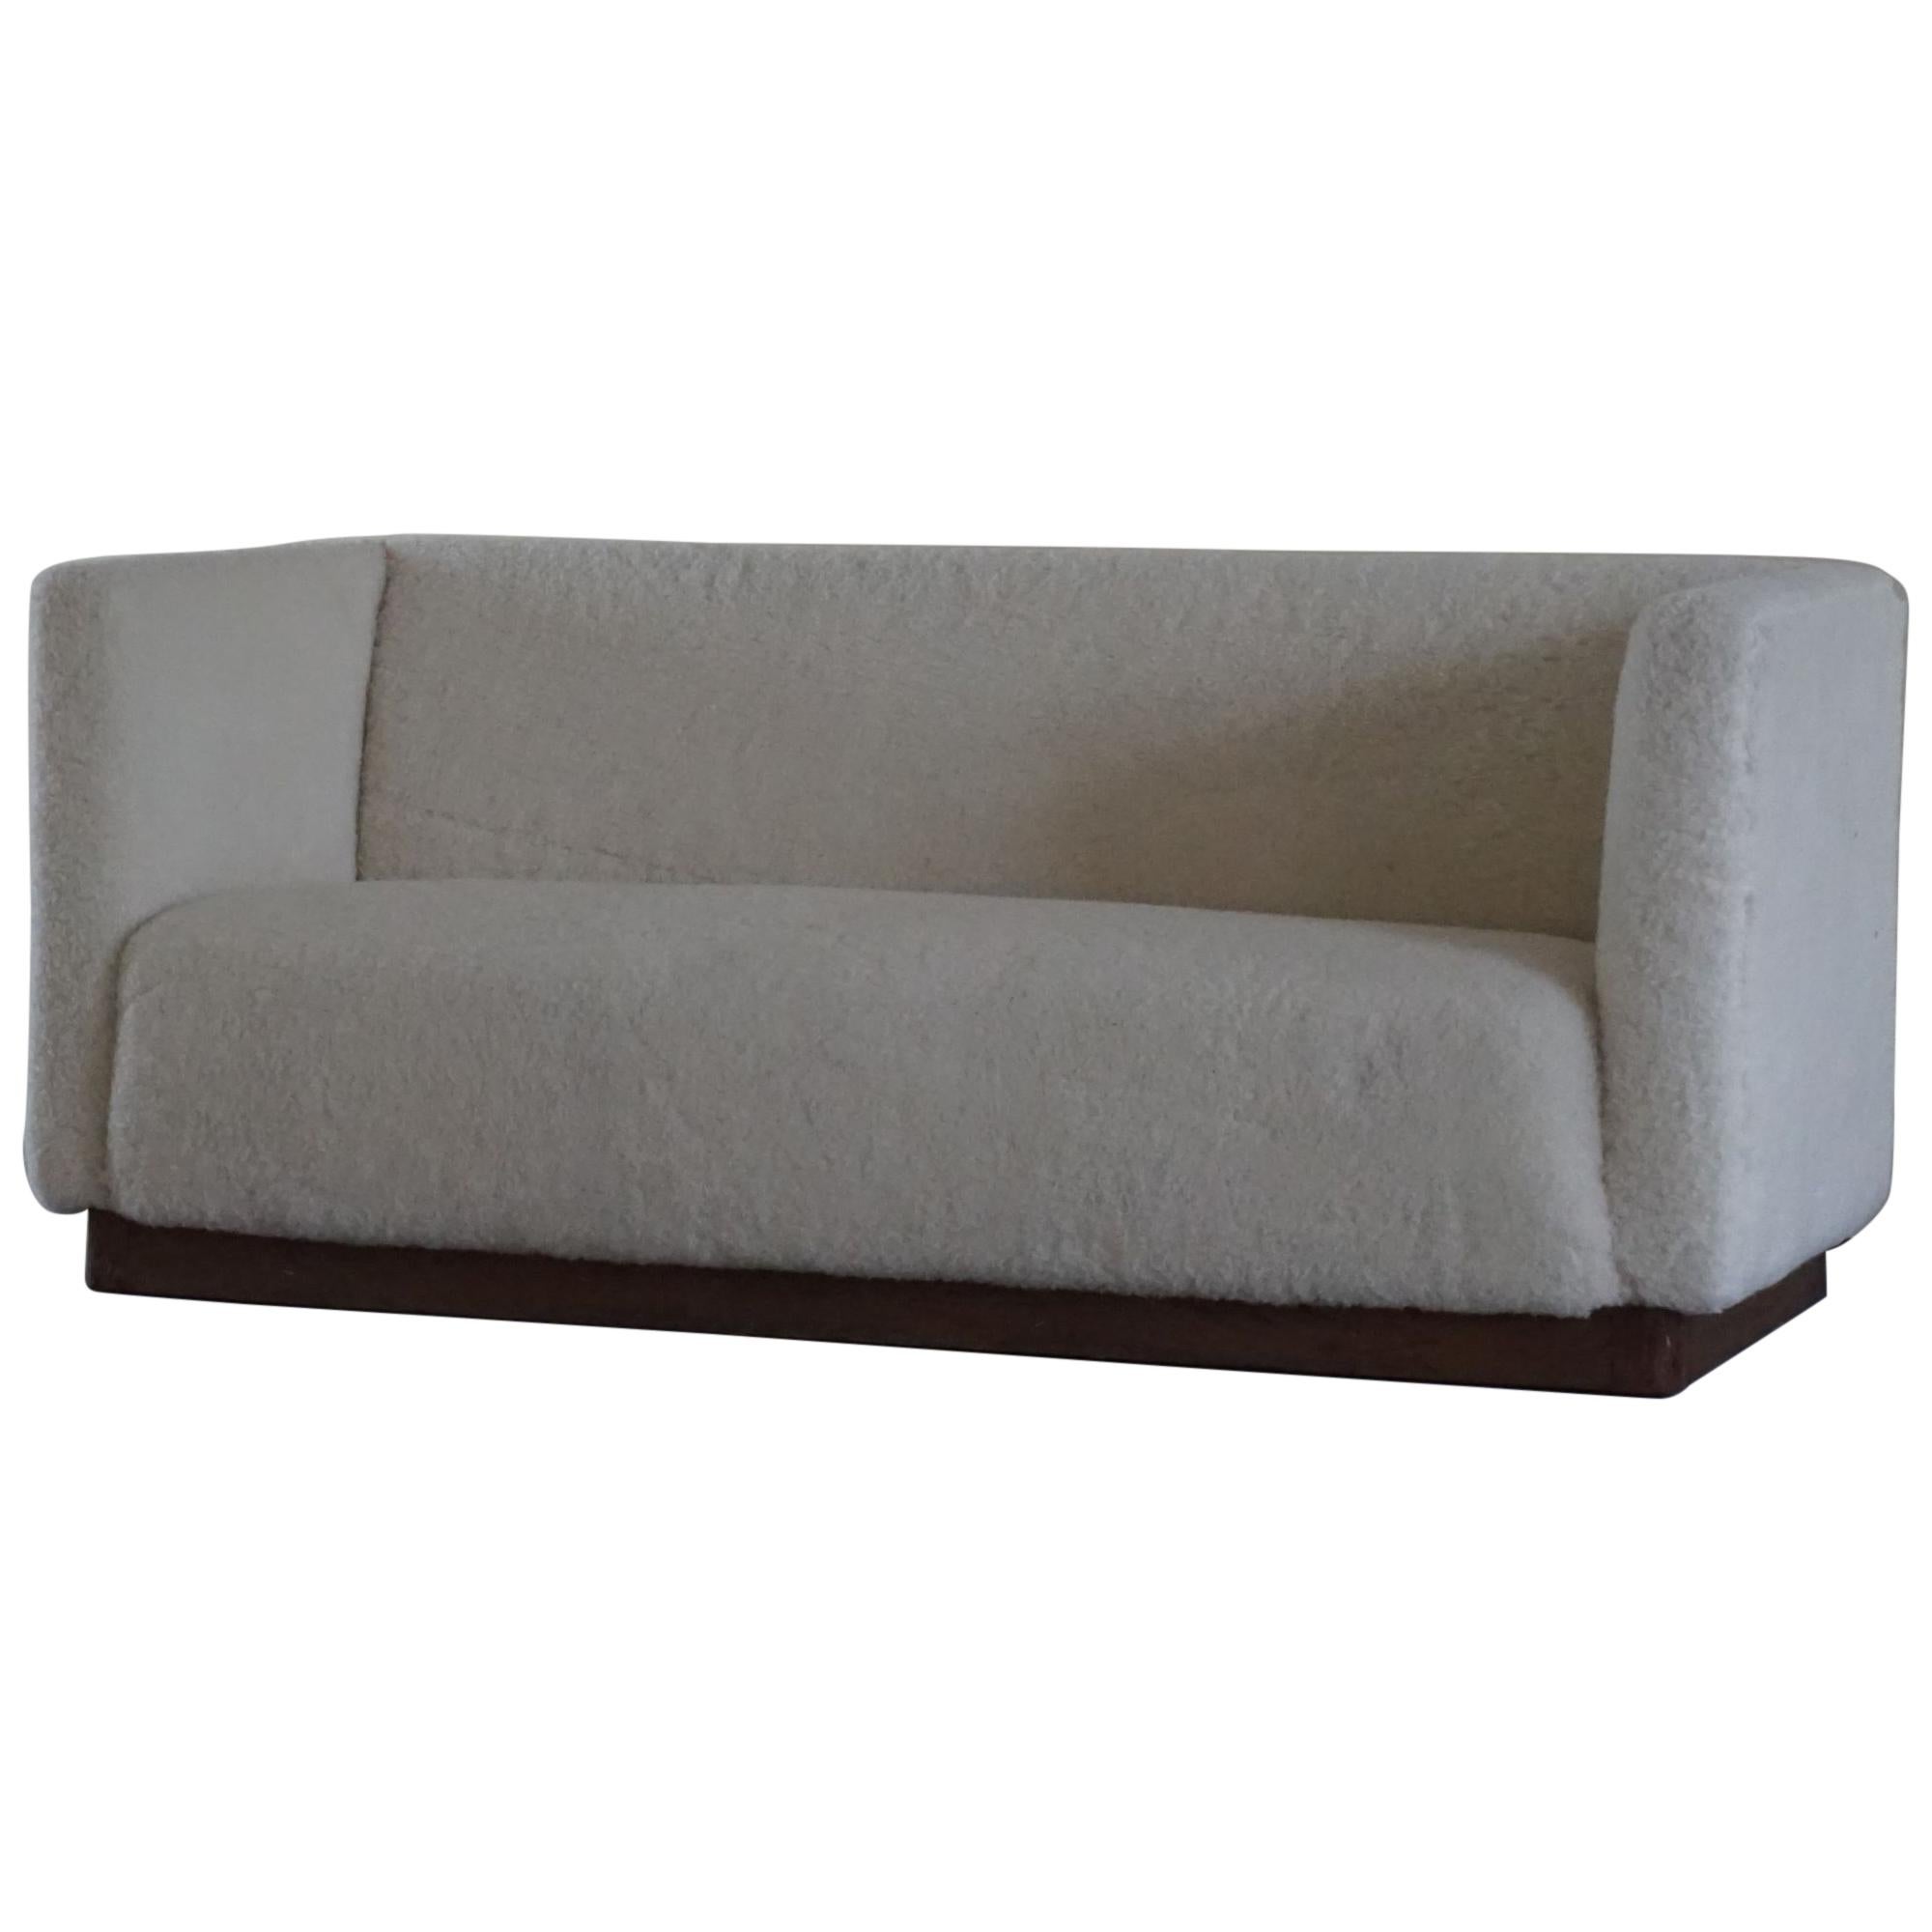 Danish Freestanding Art Deco 3-Seater Sofa Reupholstered in Sheep Skin, 1930s